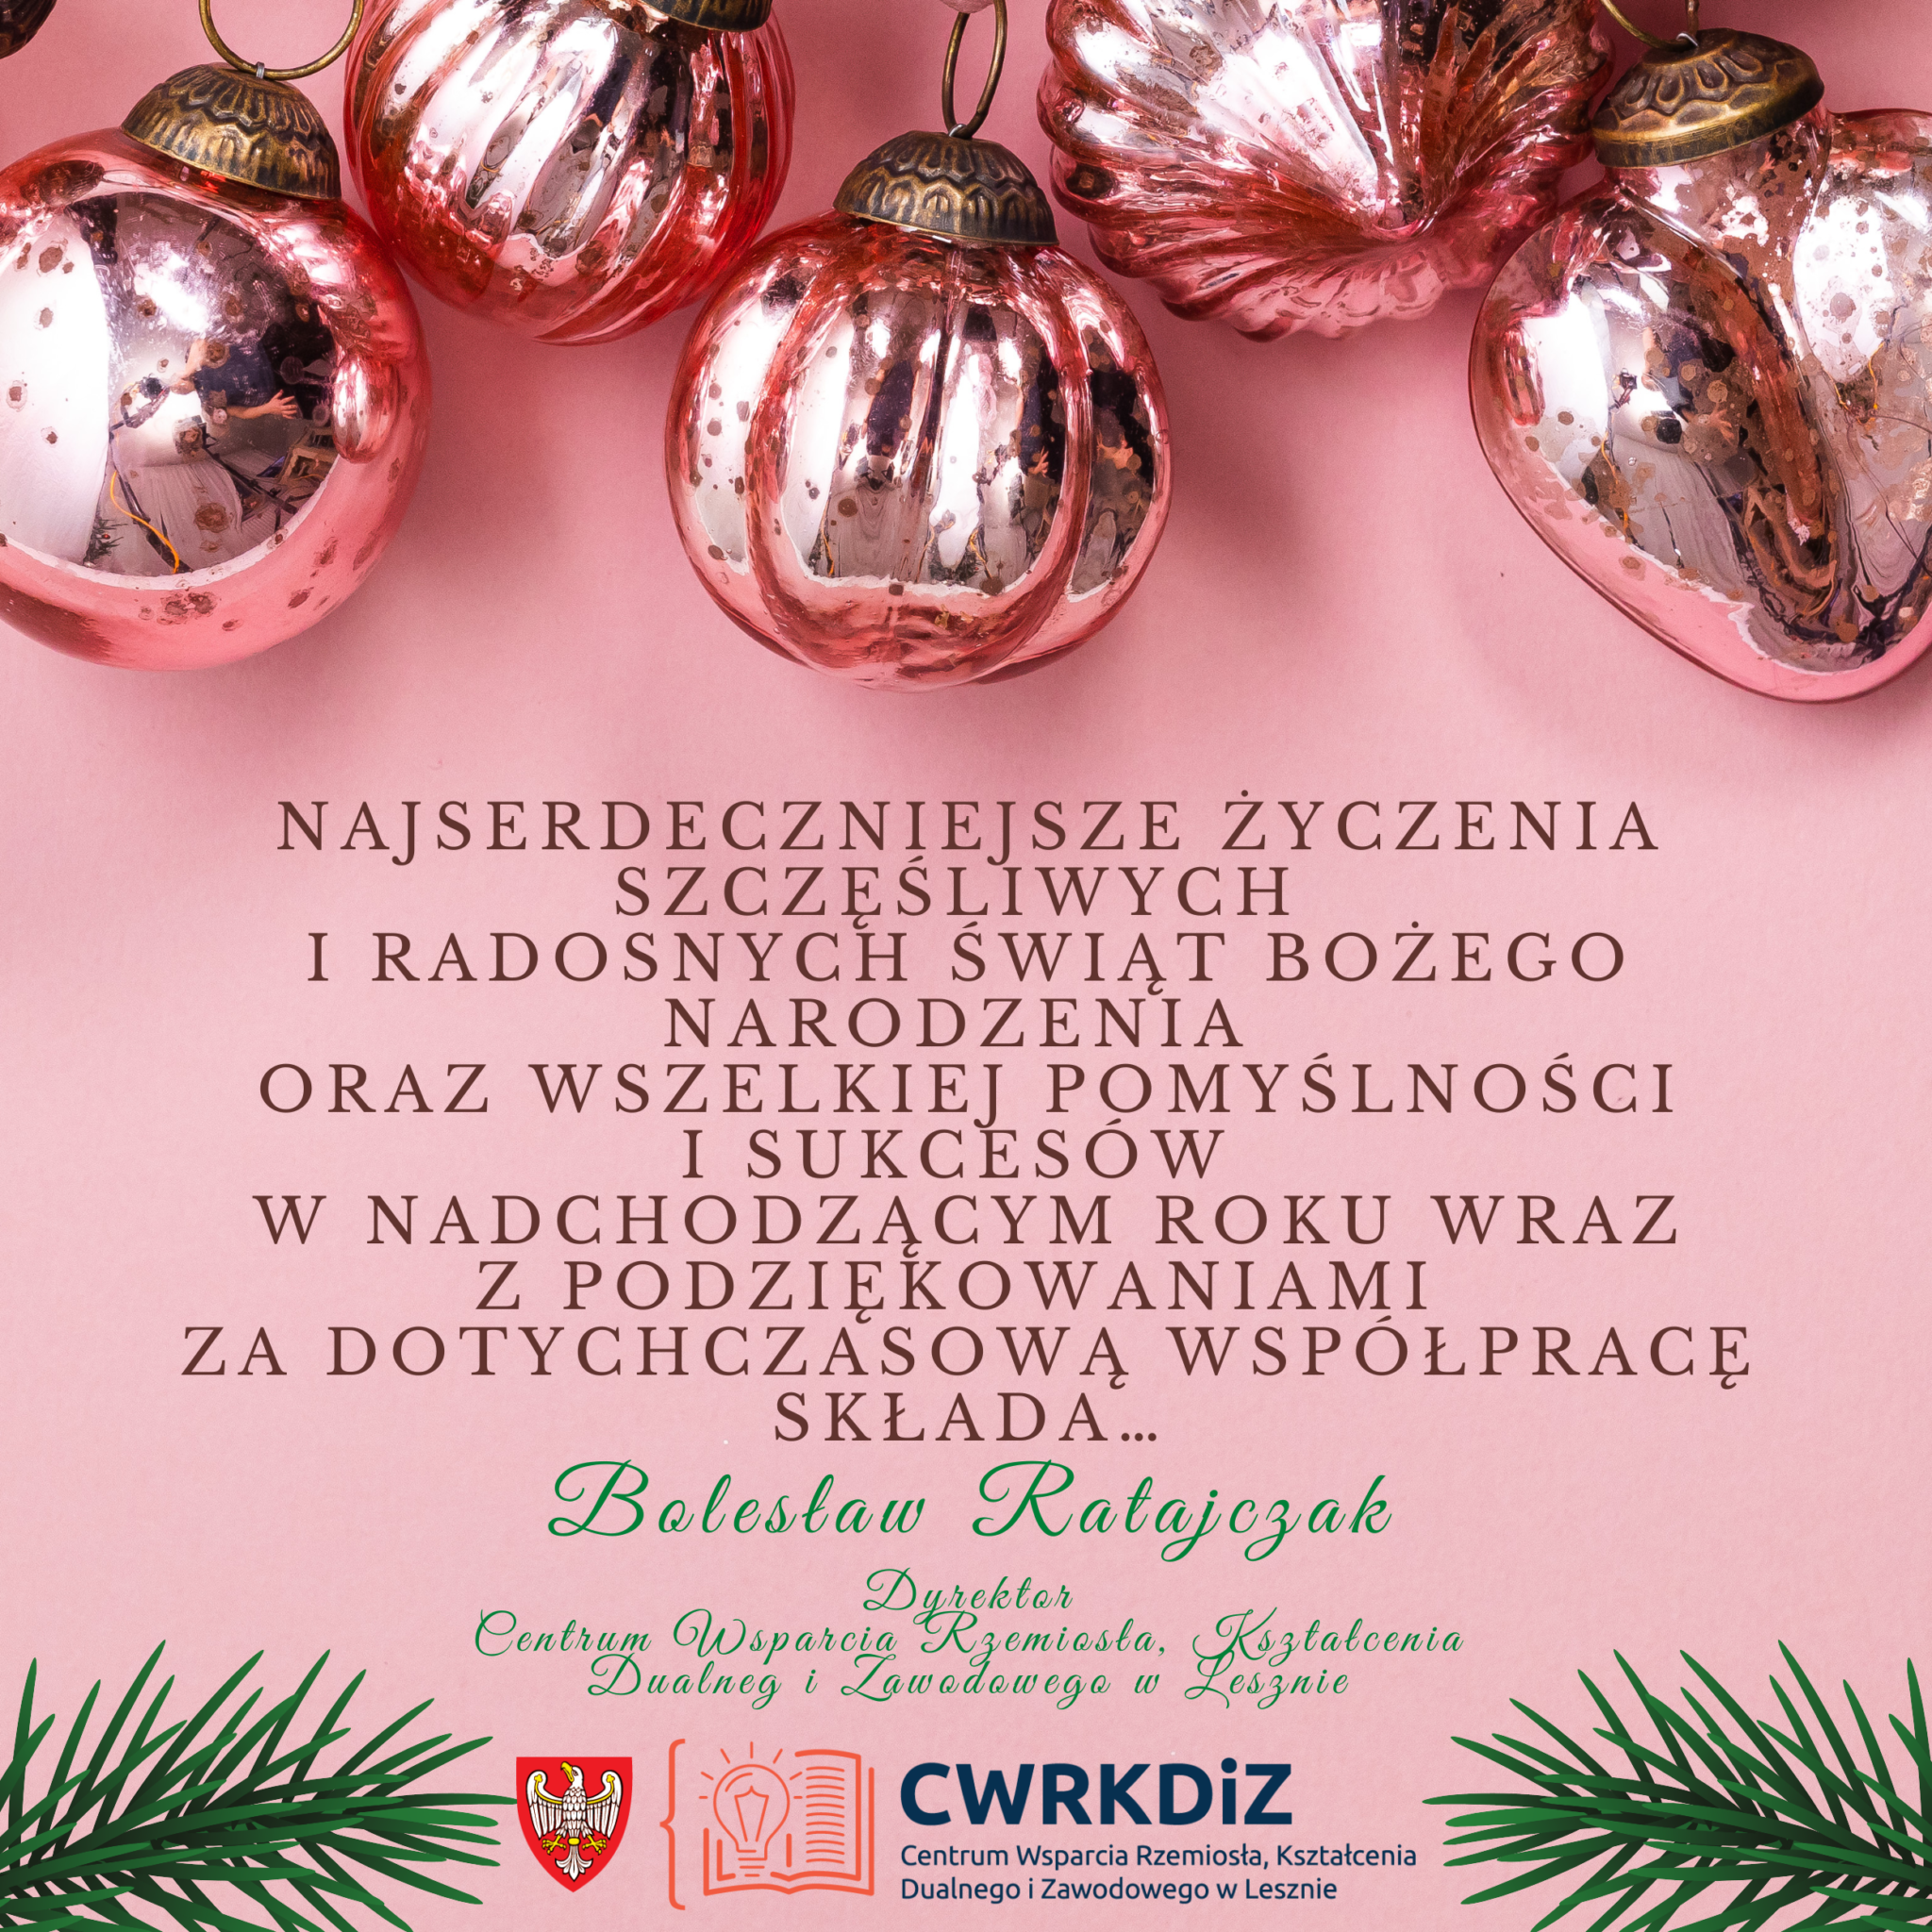 Grafika przedstawia kilka bombek choinkowych położonych na różowym tle, w środku tekst życzeń świątecznych (Najserdeczniejsze życzenia szczęśliwych i radosnych Świąt Bożego Narodzenia oraz Wszelkiej Pomyślności i Sukcesów w nadchodzącym roku wraz z podziękowaniami za dotychczasową współpracę składa Bolesław Ratajczak), na dole dwie gałązki świerkowe a pomiędzy nimi logo Centrum Wsparcia Rzemiosła, Kształcenia Dualnego i Zawodowego w Lesznie.
Artykuł nie zawiera treści.